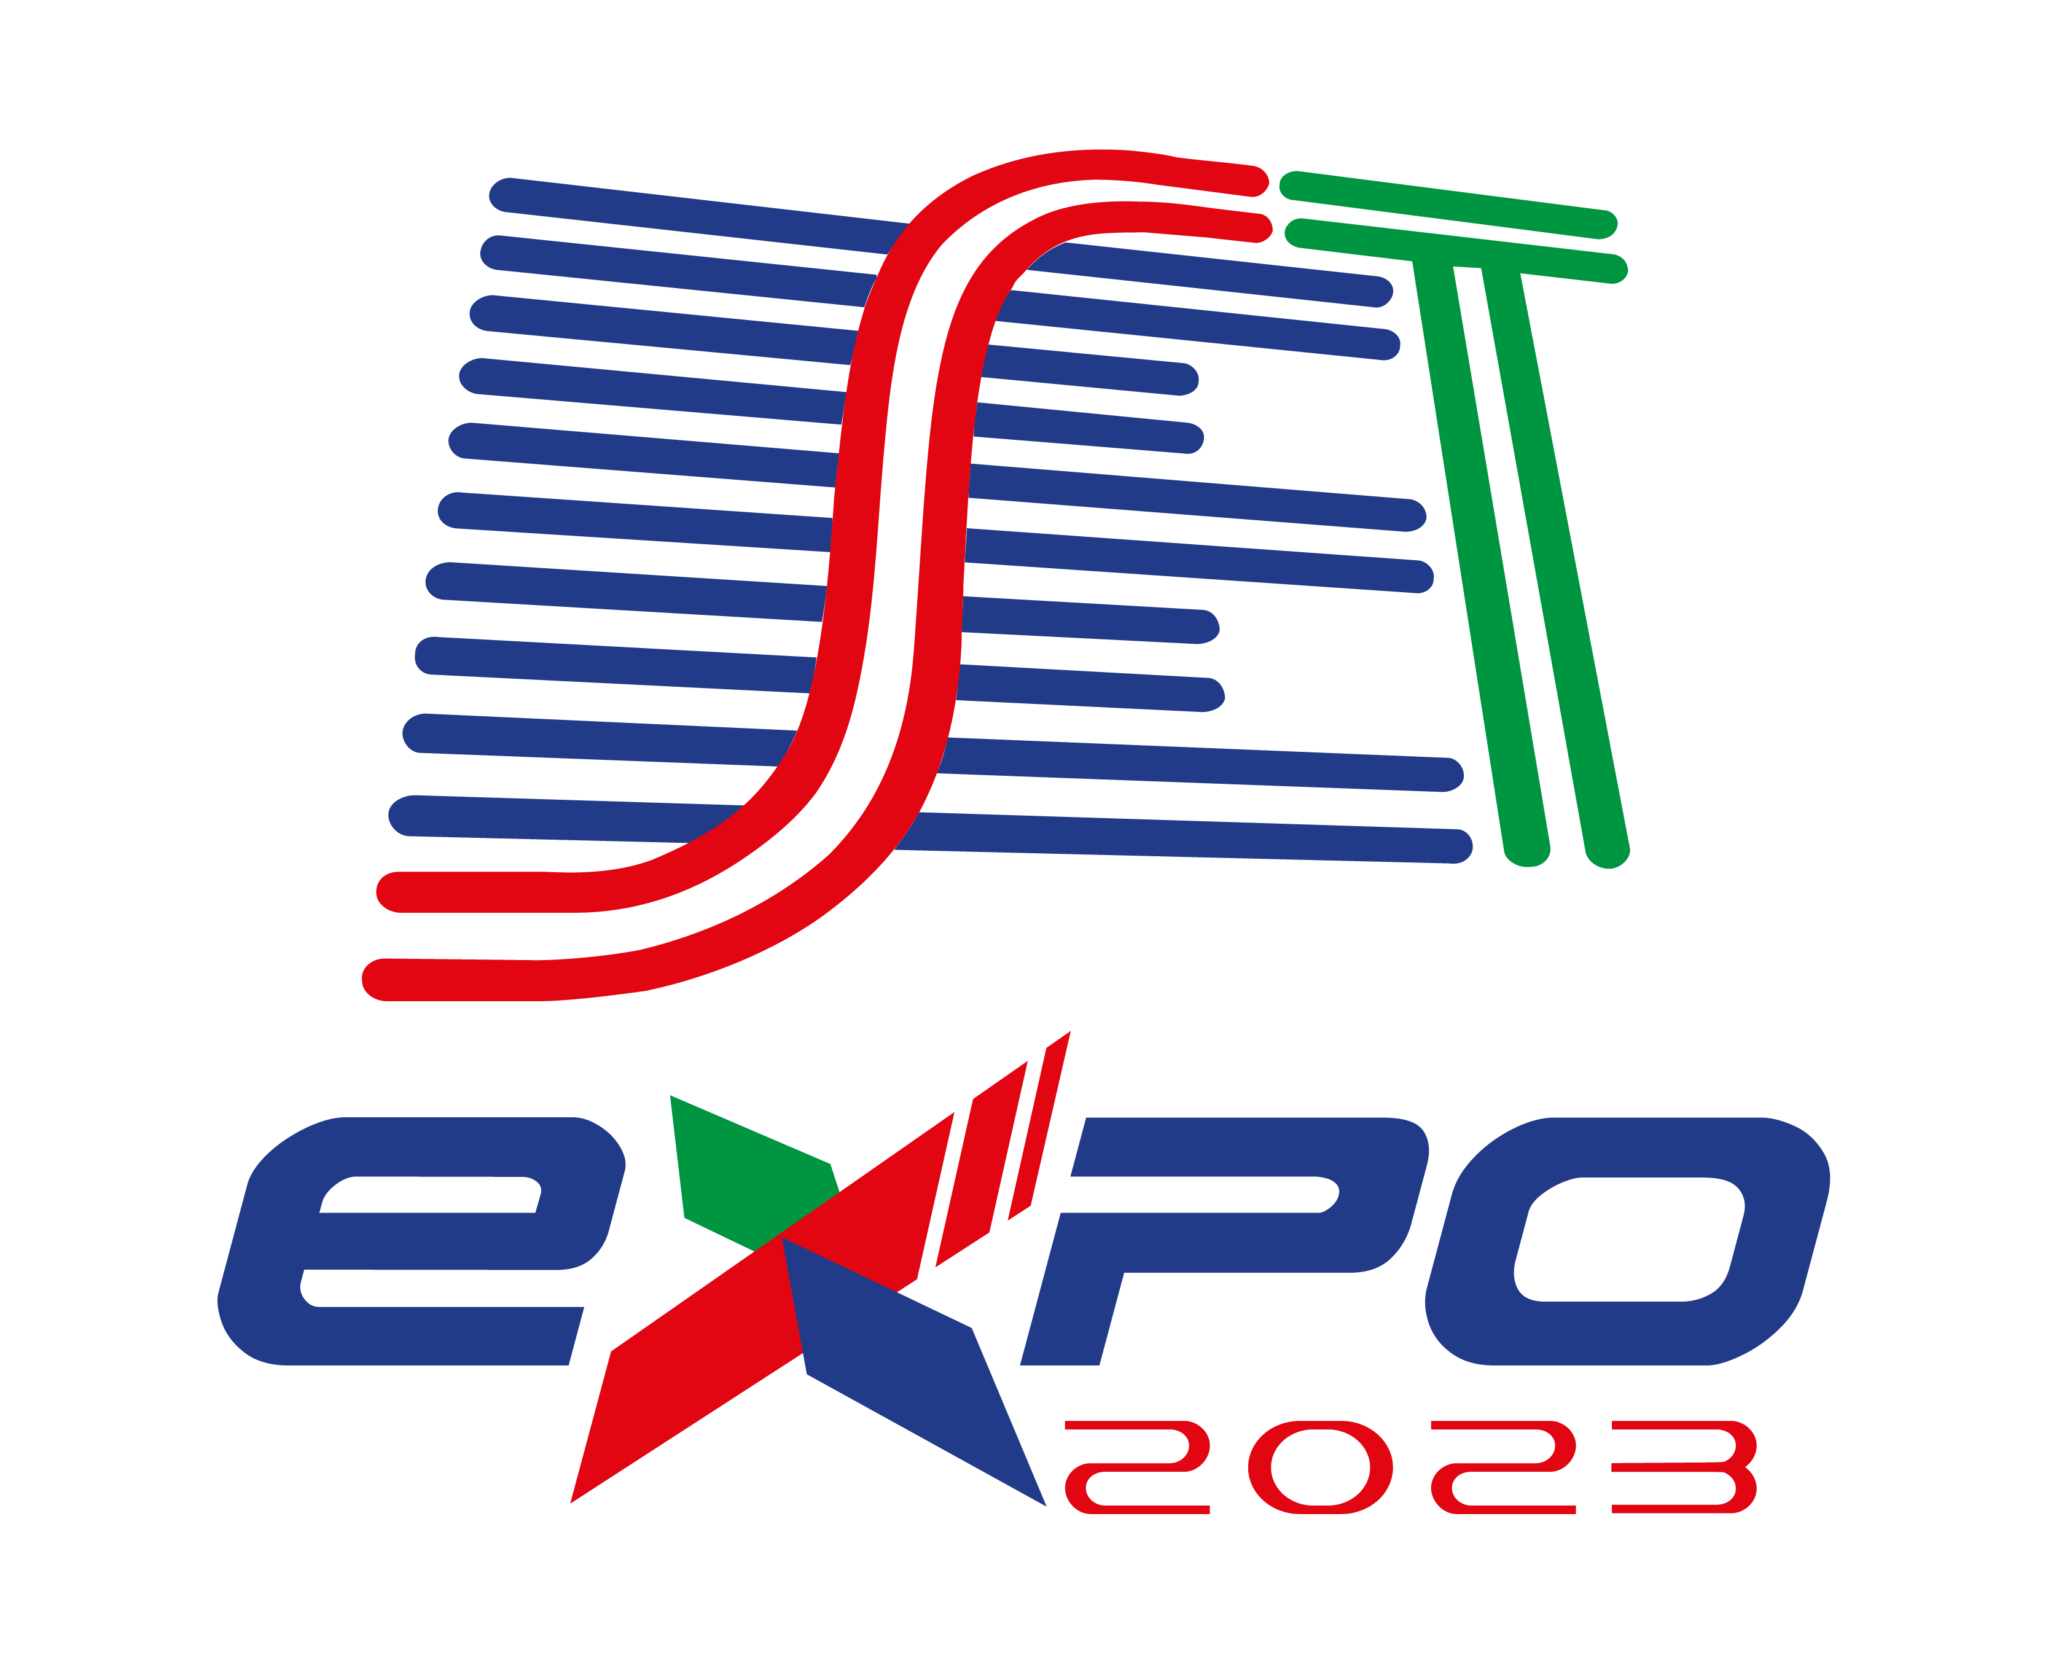 Logo-Colorido-Vertical-SetExpo-2023-2048x1664